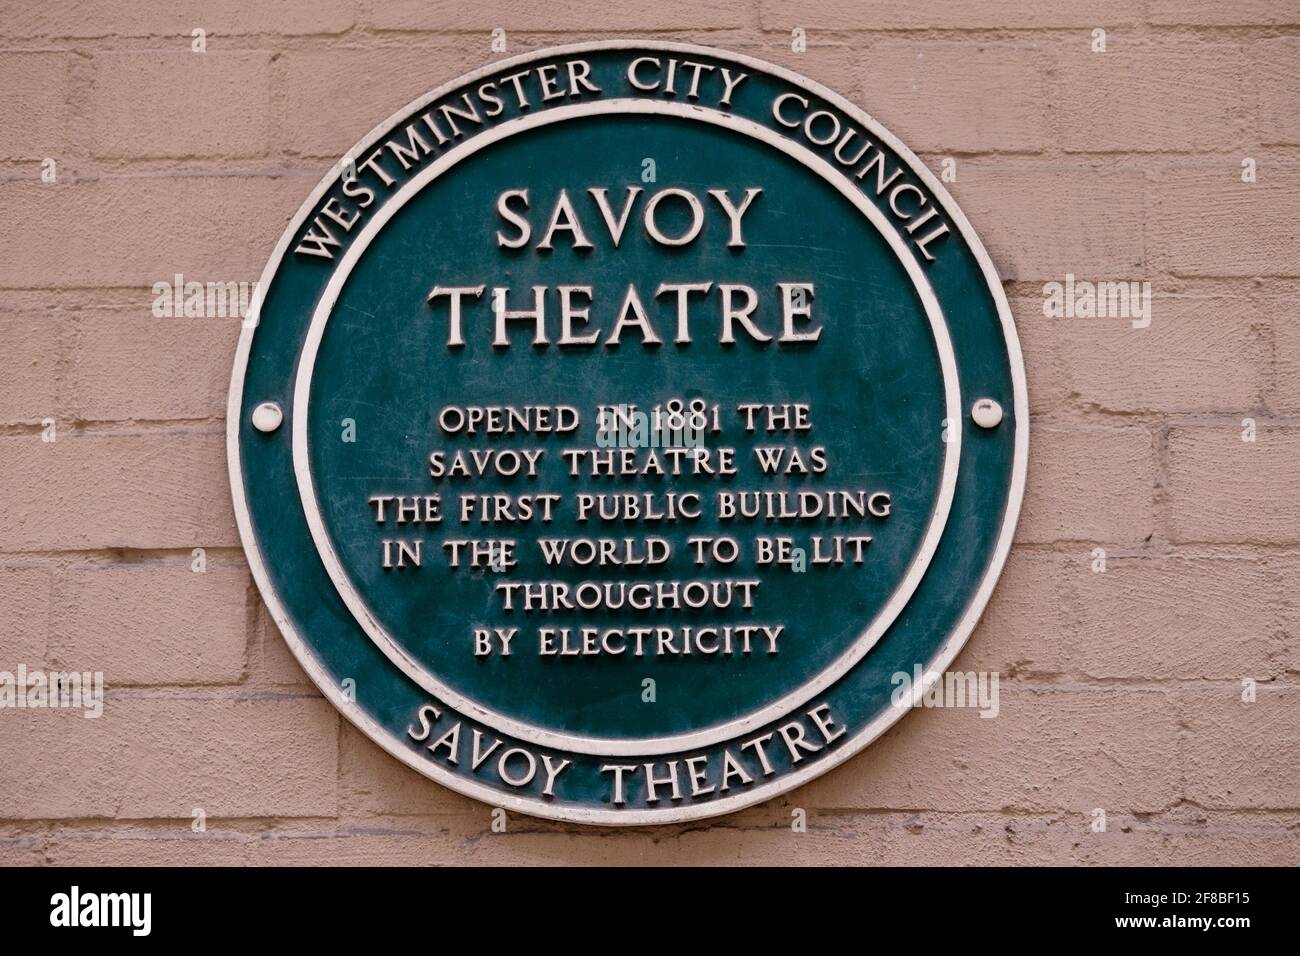 Lapide sul muro del Savoy Theatre di Londra che commemora il teatro come il primo edificio pubblico al mondo ad essere illuminato dall'elettricità in tutto il mondo. Foto Stock